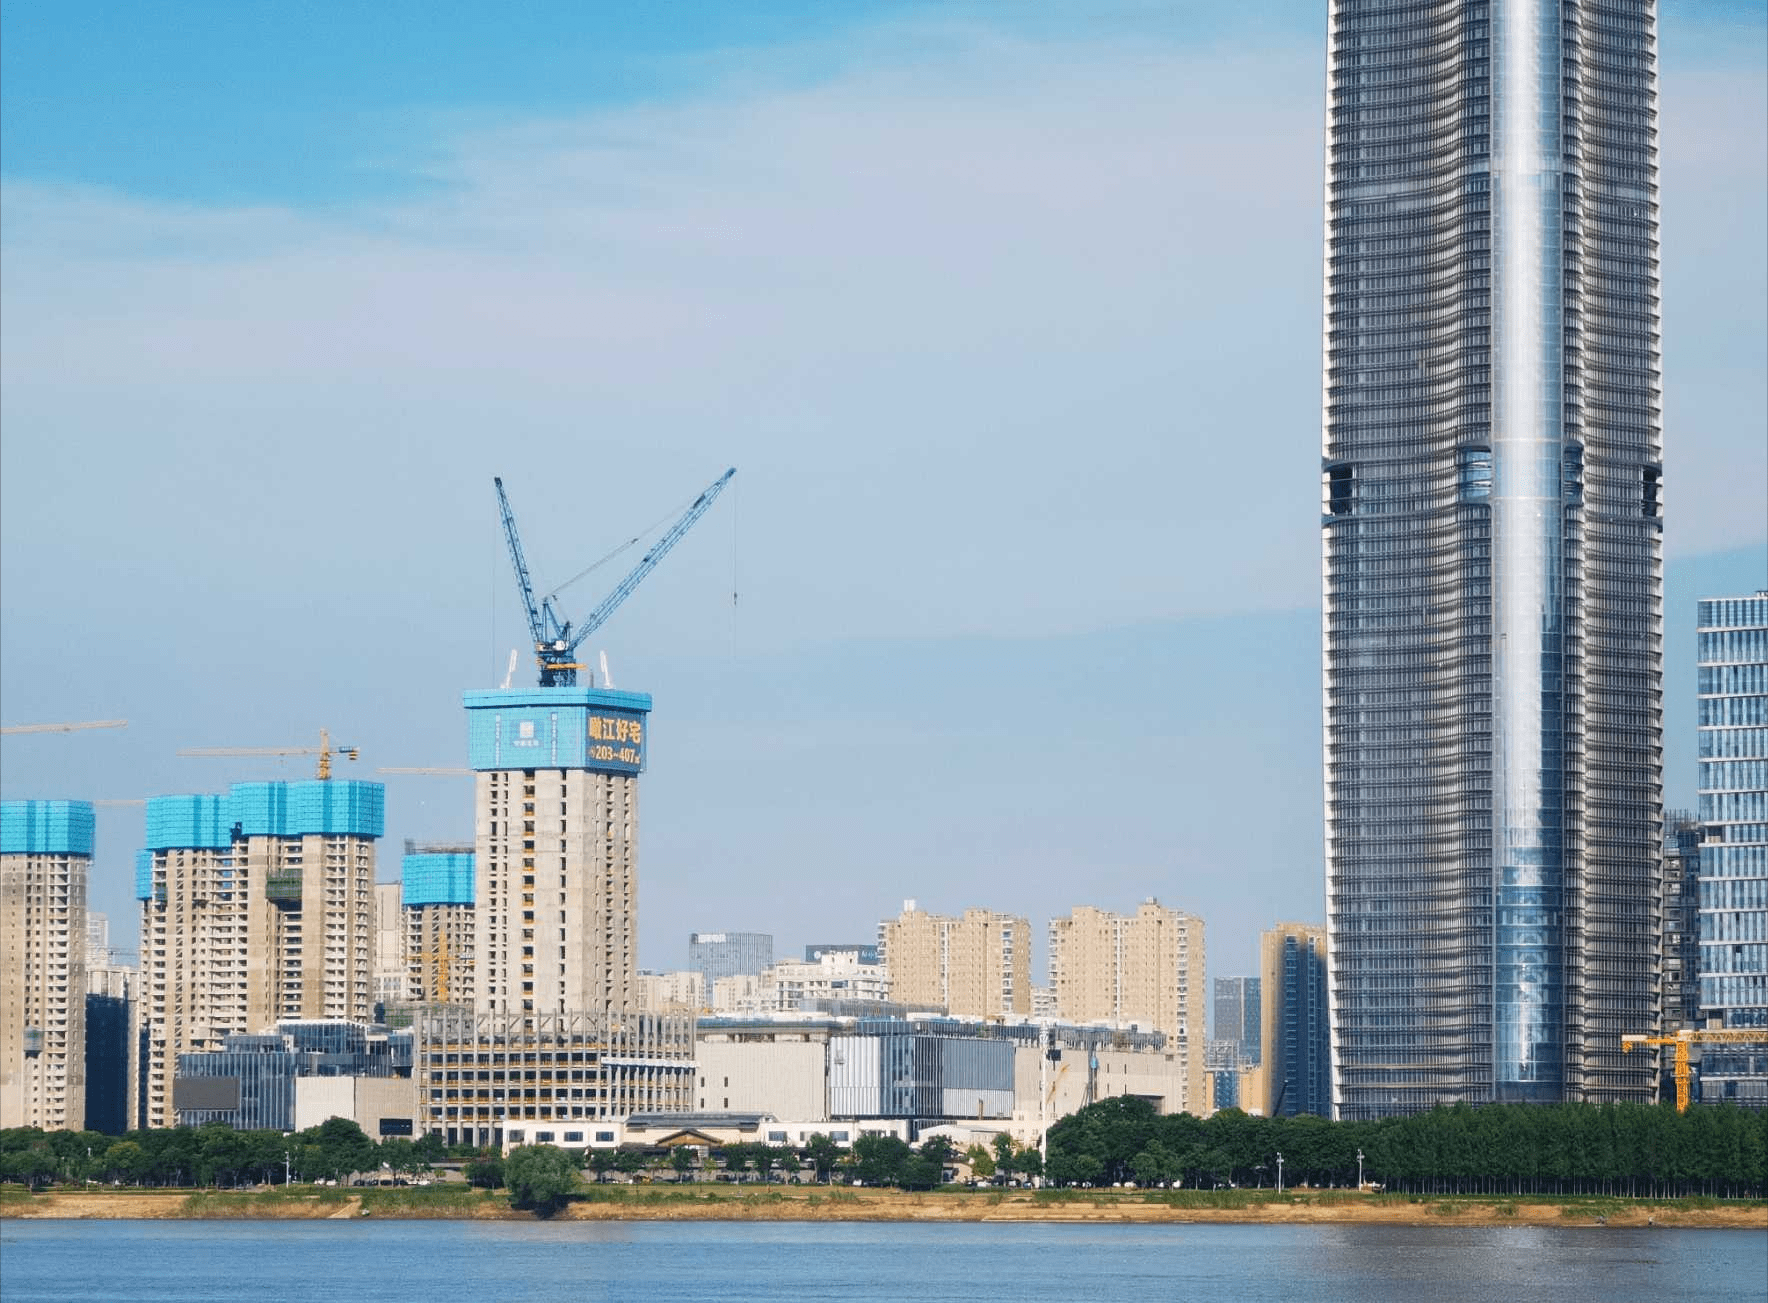 武汉在建的400米级超级摩天楼——长江中心,核心筒高度超过120米